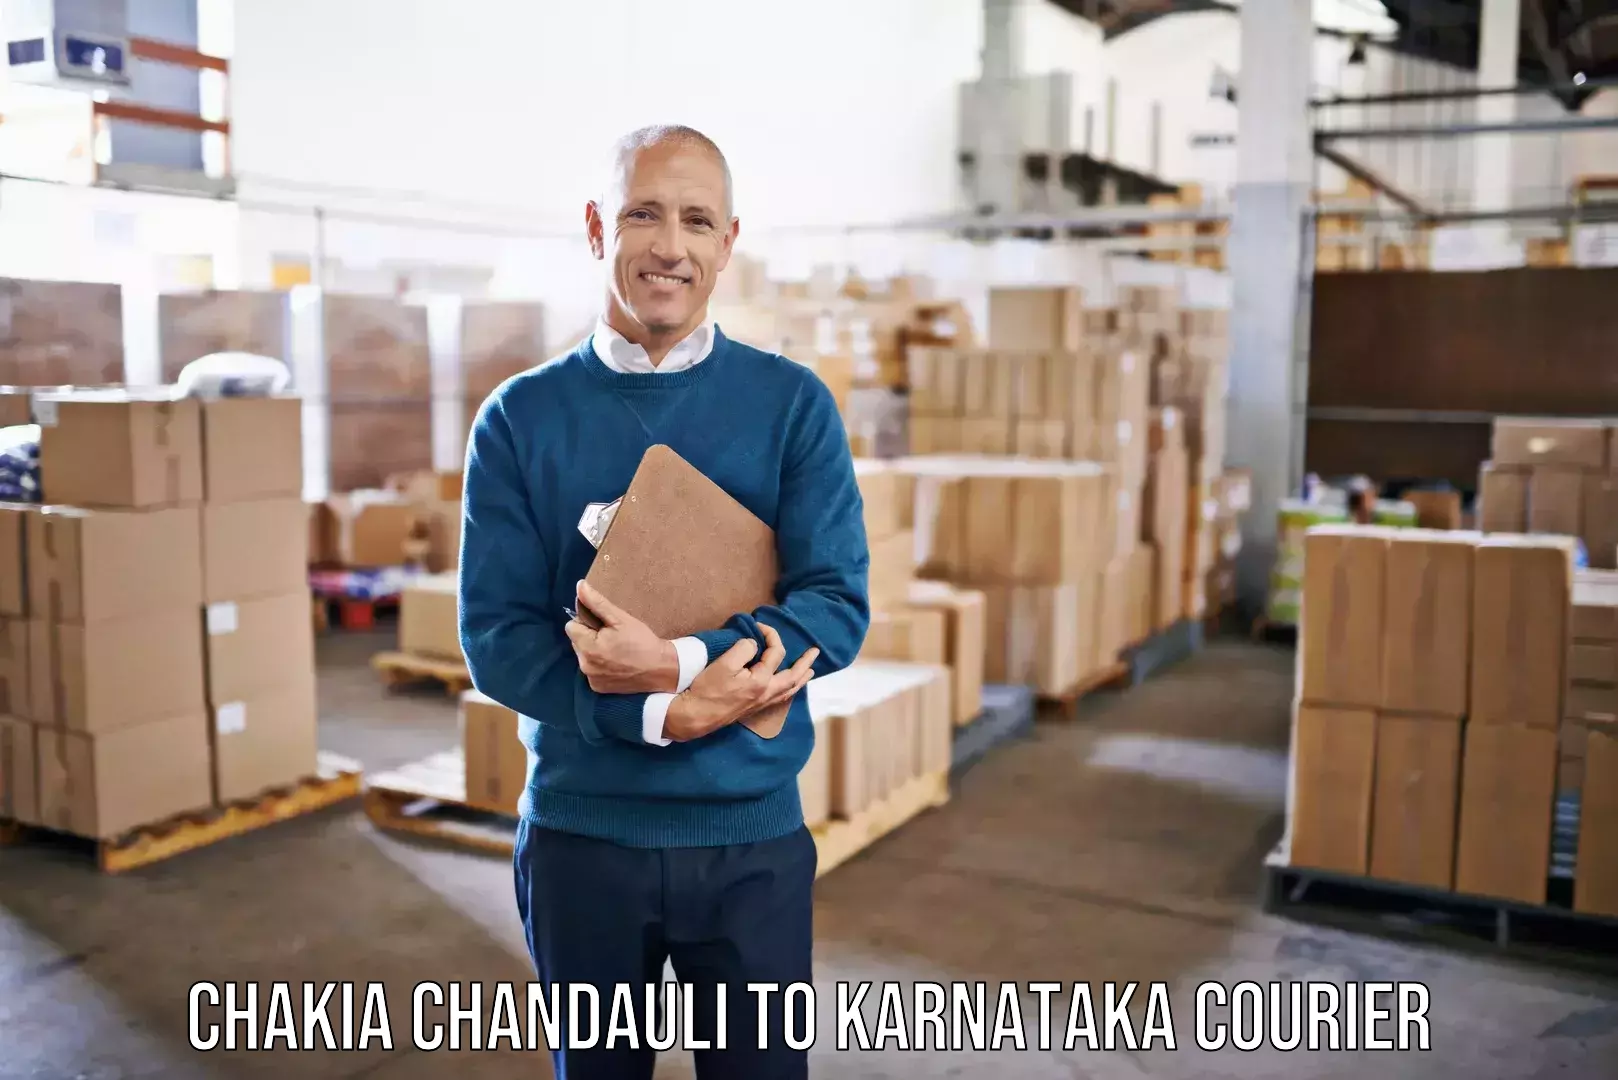 Personalized moving service Chakia Chandauli to Kanjarakatte